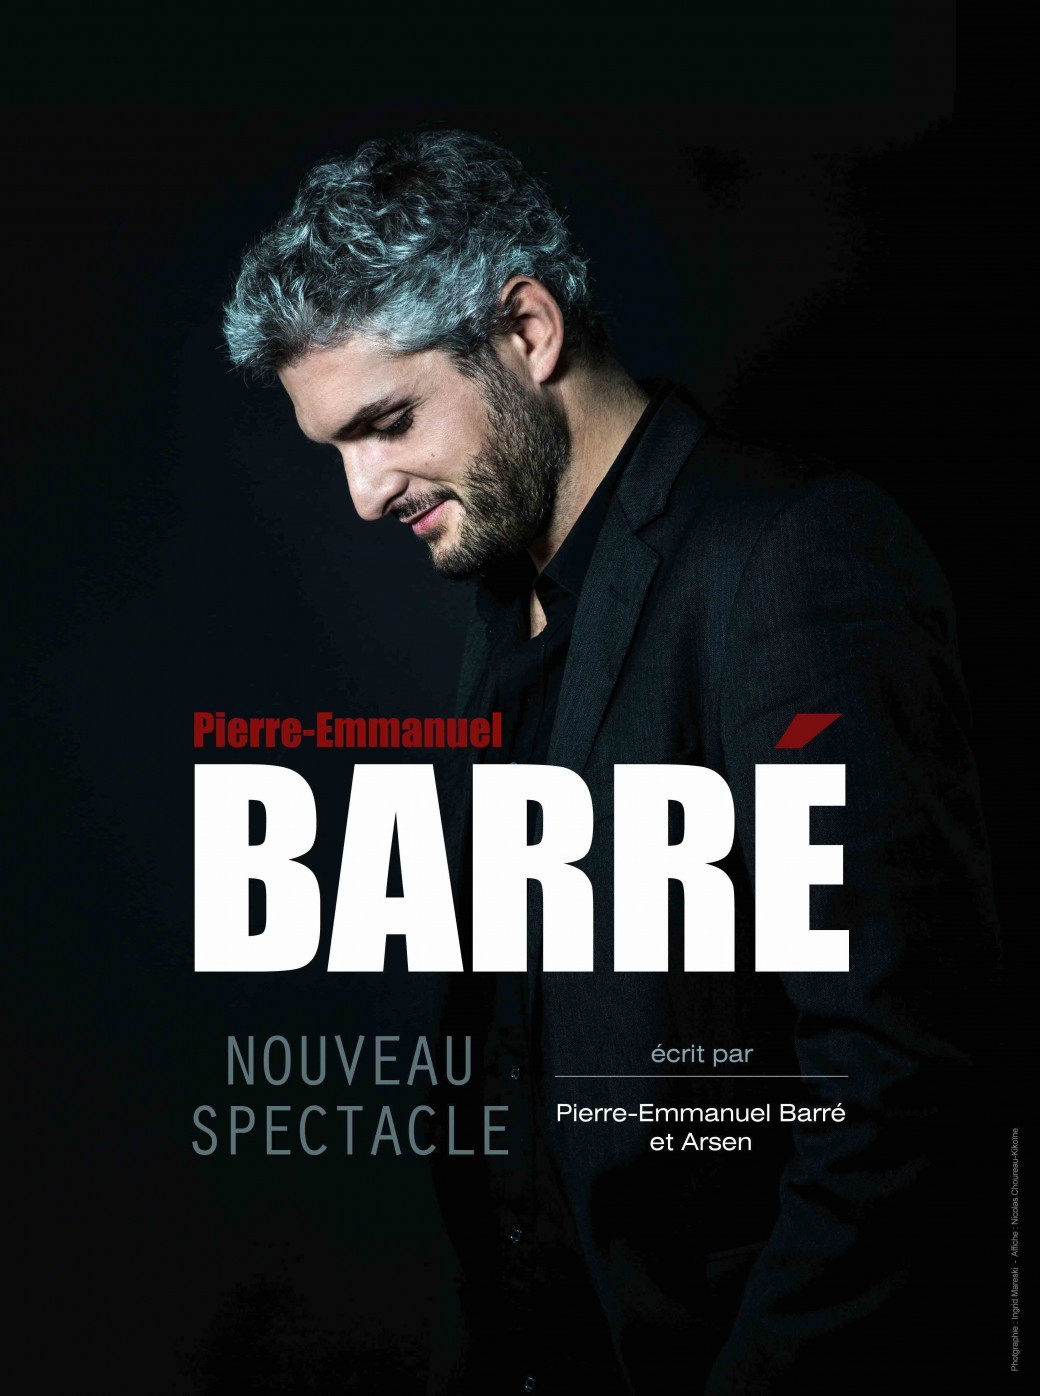 Pierre-Emmanuel Barré - Nouveau spectacle